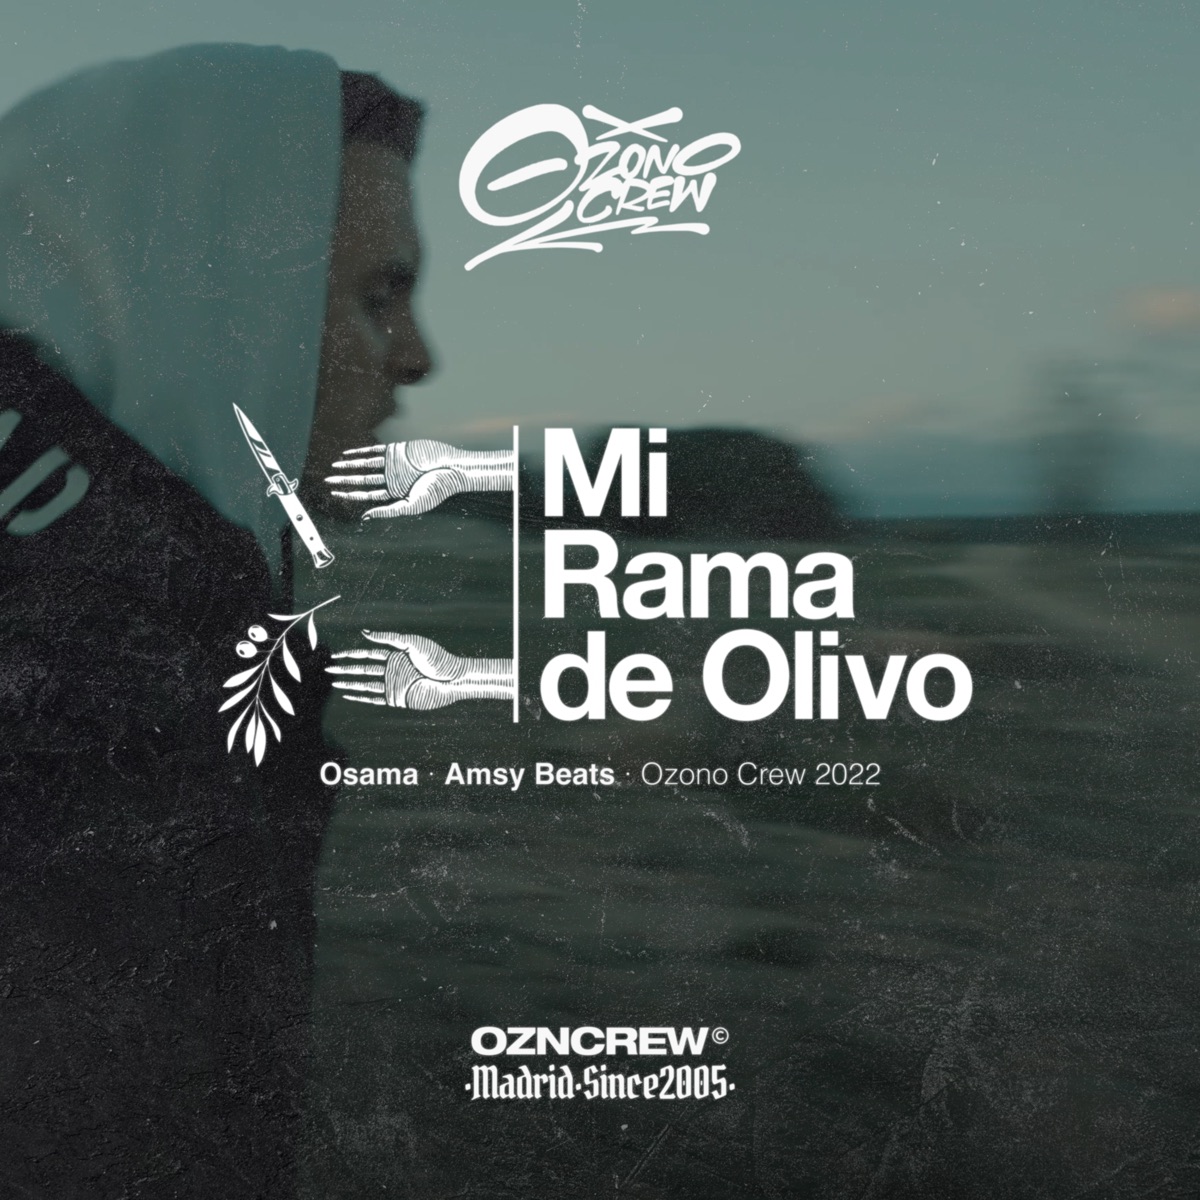 Mente en Blanco (feat. Natos y Waor) - Single by Ozono Crew & Chalo on  Apple Music